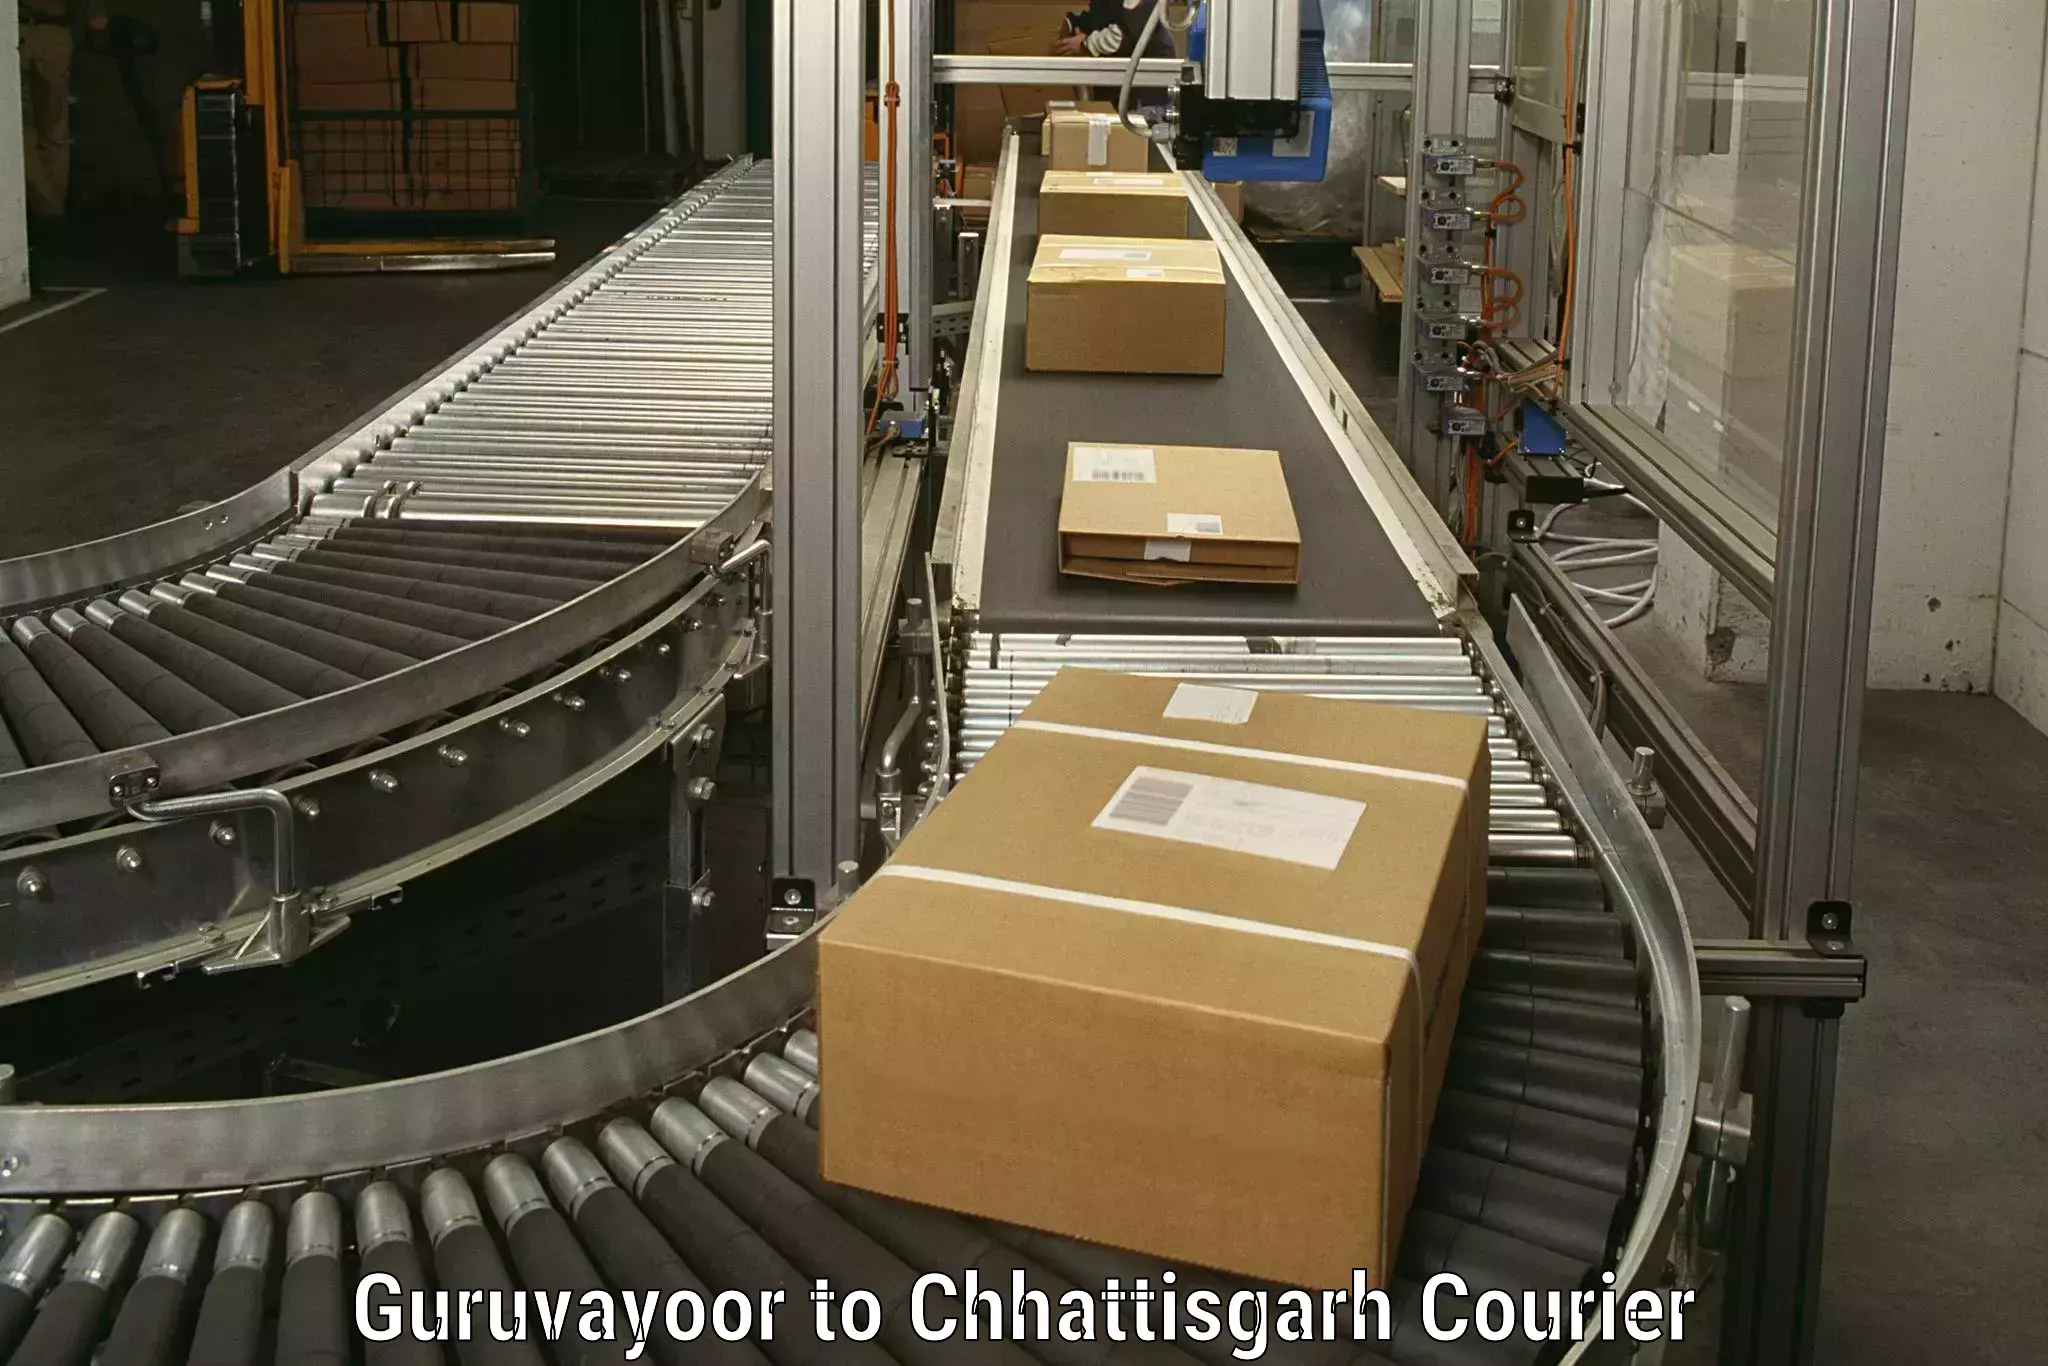 Professional home goods transport in Guruvayoor to Raigarh Chhattisgarh